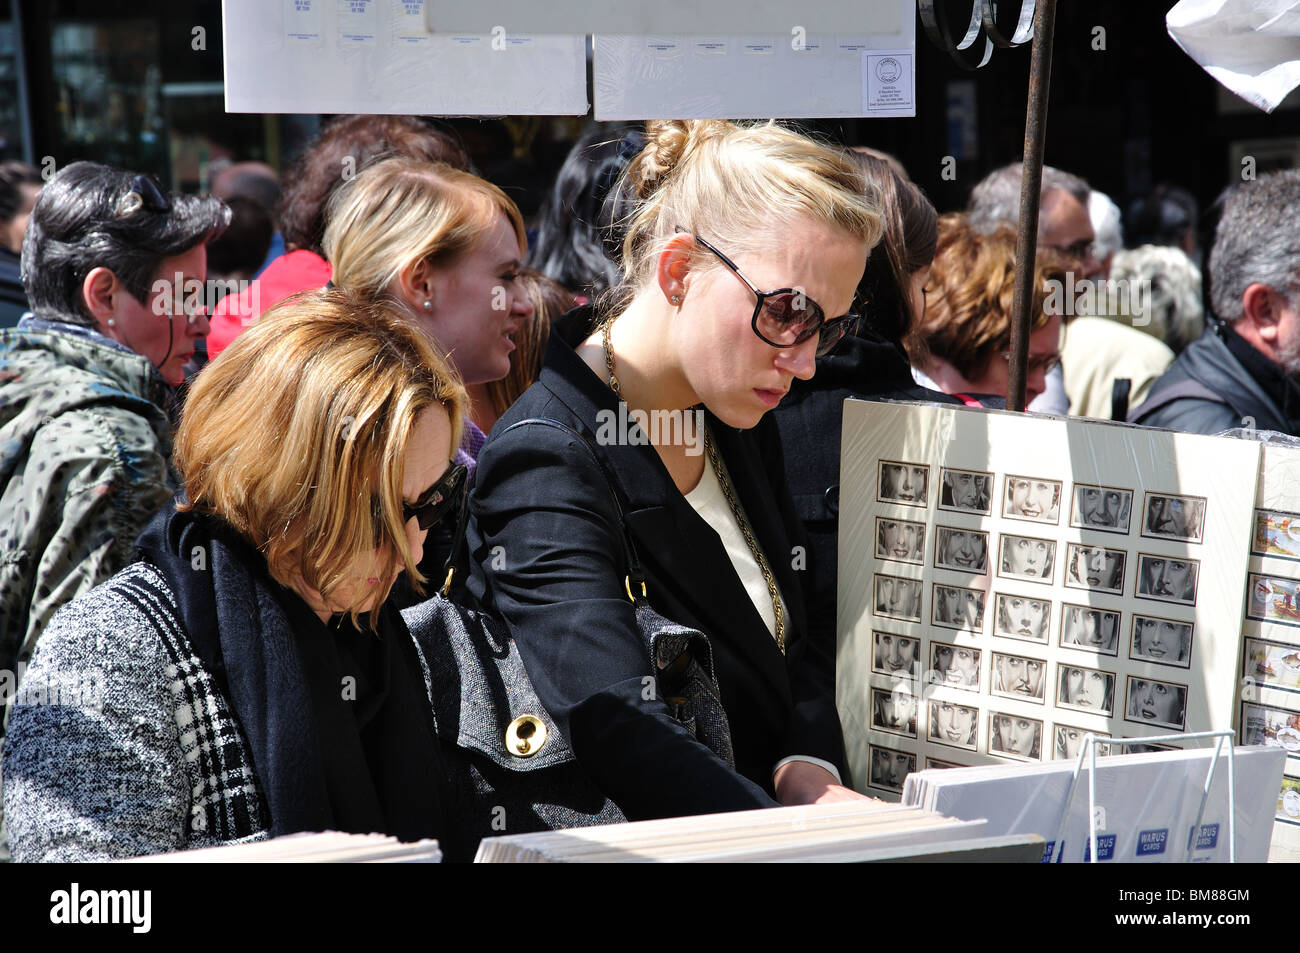 Les femmes regardant des épreuves en décrochage, marché d'antiquités de Portobello, Portobello Road, Notting Hill, Londres, Angleterre, Royaume-Uni Banque D'Images